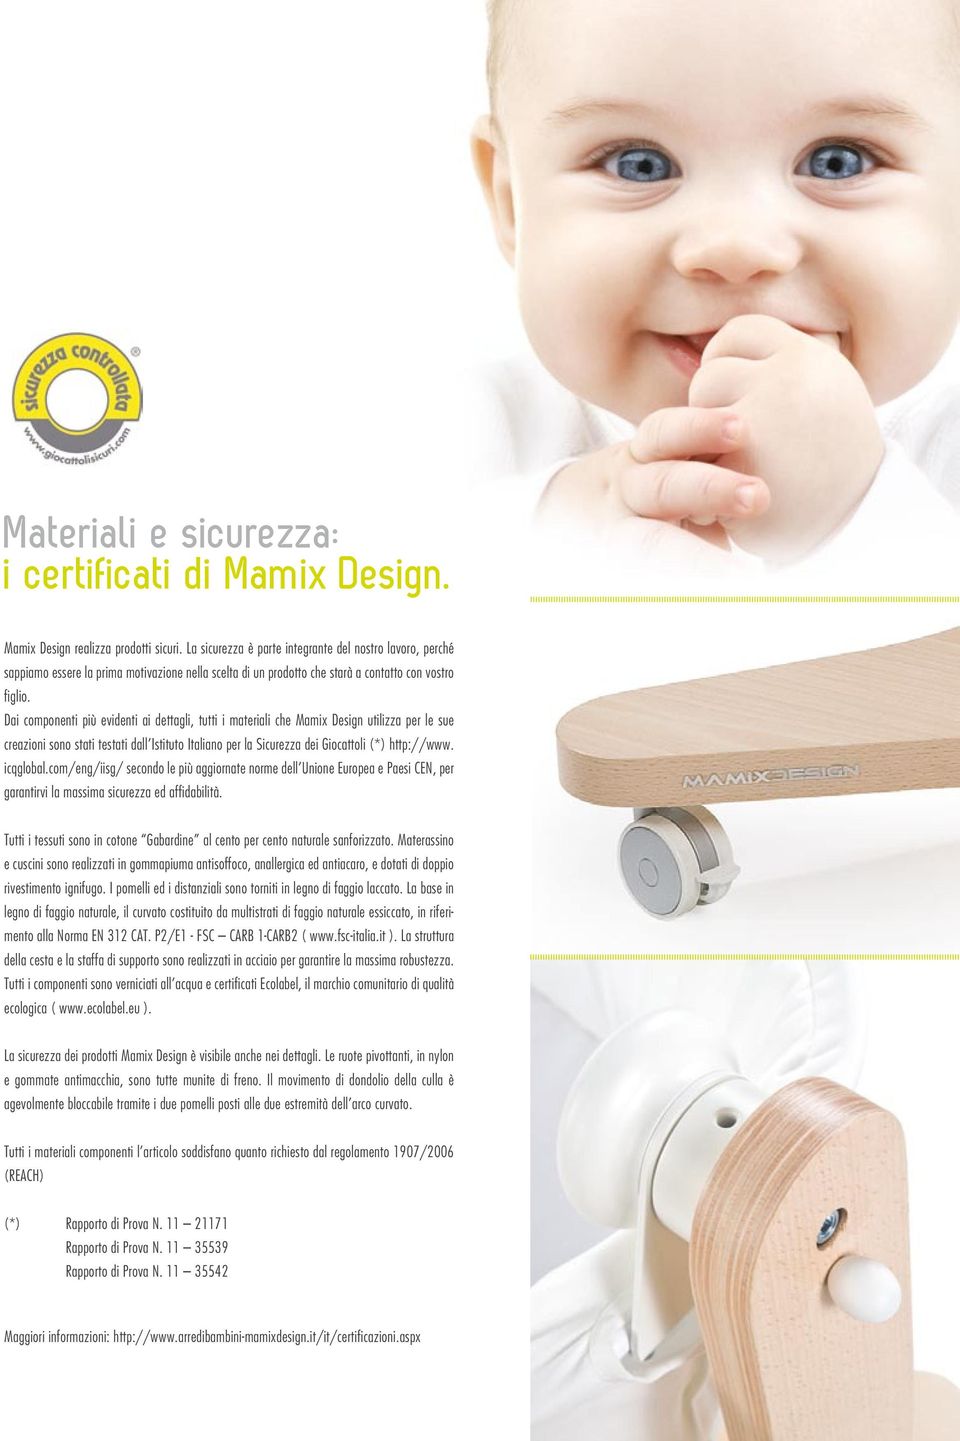 Dai componenti più evidenti ai dettagli, tutti i materiali che Mamix Design utilizza per le sue creazioni sono stati testati dall Istituto Italiano per la Sicurezza dei Giocattoli (*) http://www.